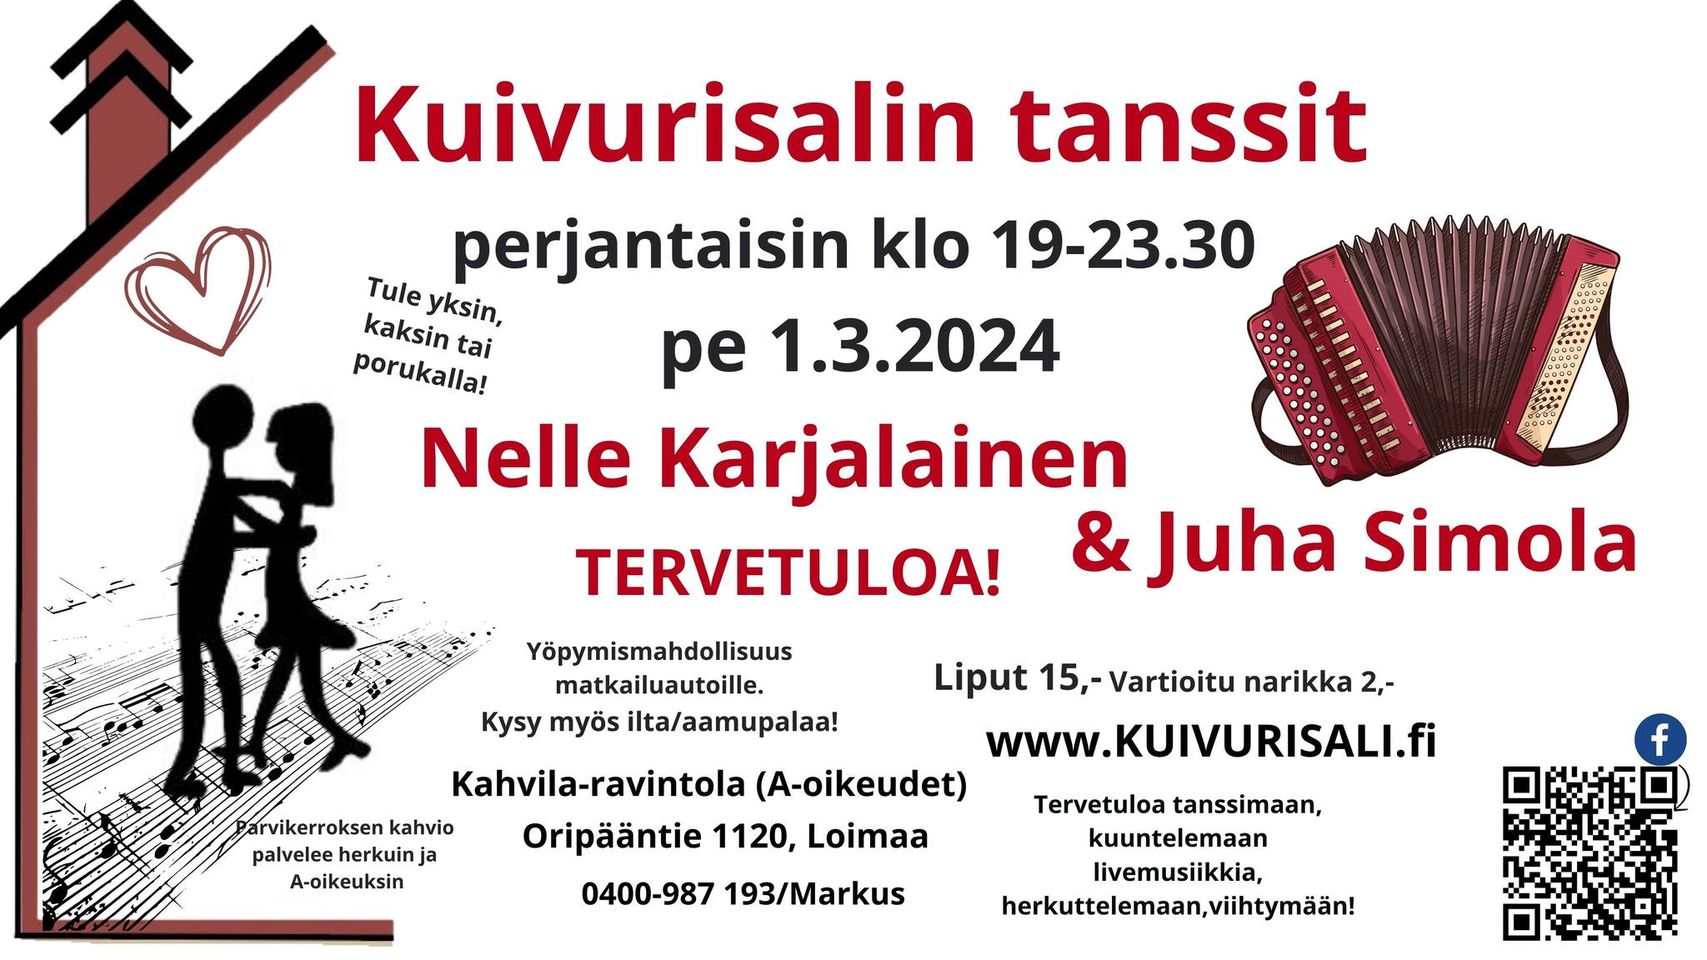 Kuivurisalilla pe 1.3.2024 Nelle Karjalainen & Juha Simola